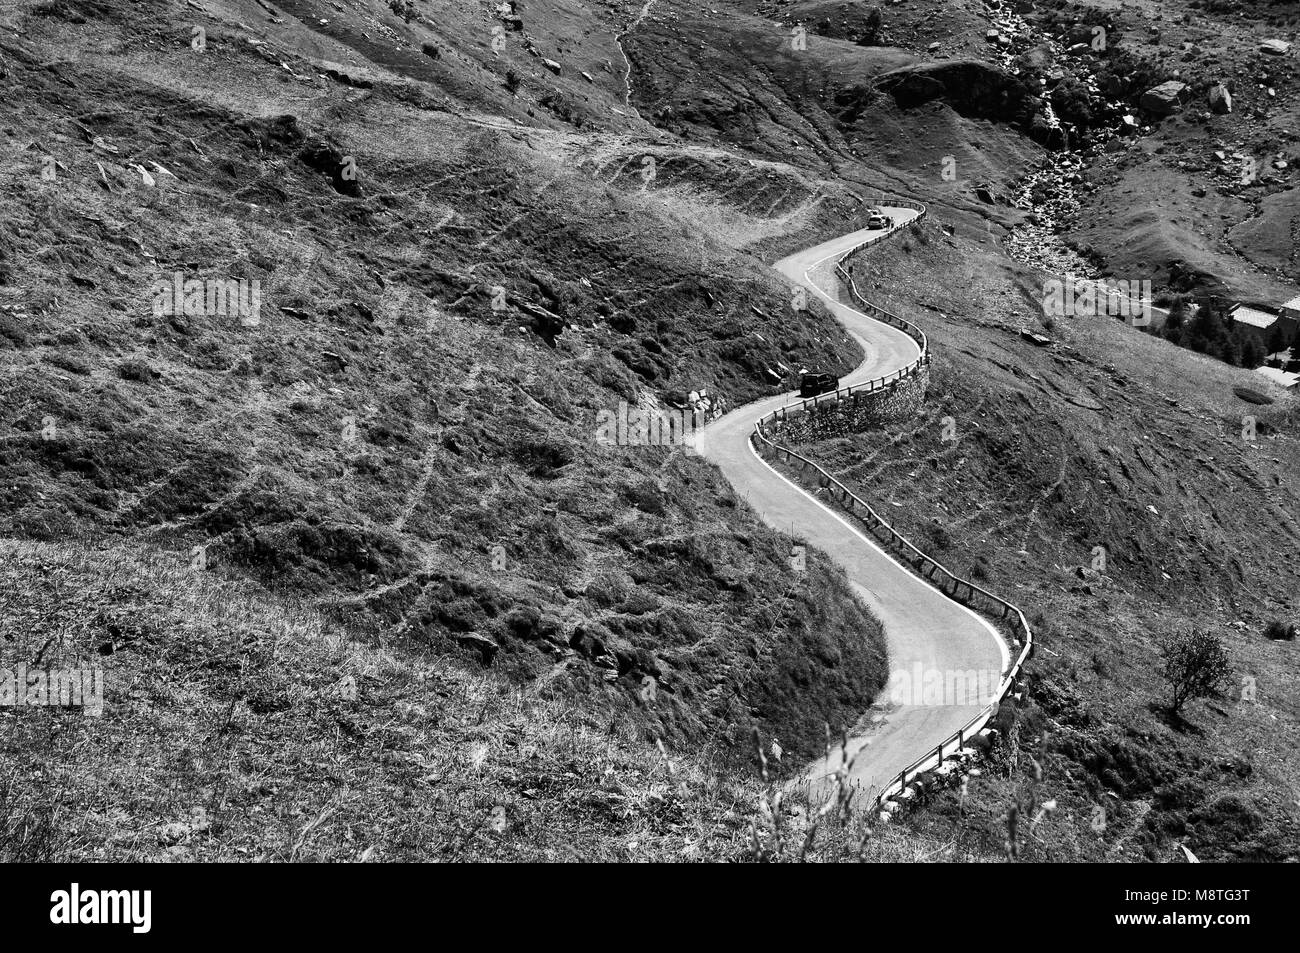 Chemin touristique paysage sinueux chemin emblématique - noir et blanc photo Italie Piémont Alpes vers septembre 2013 Banque D'Images